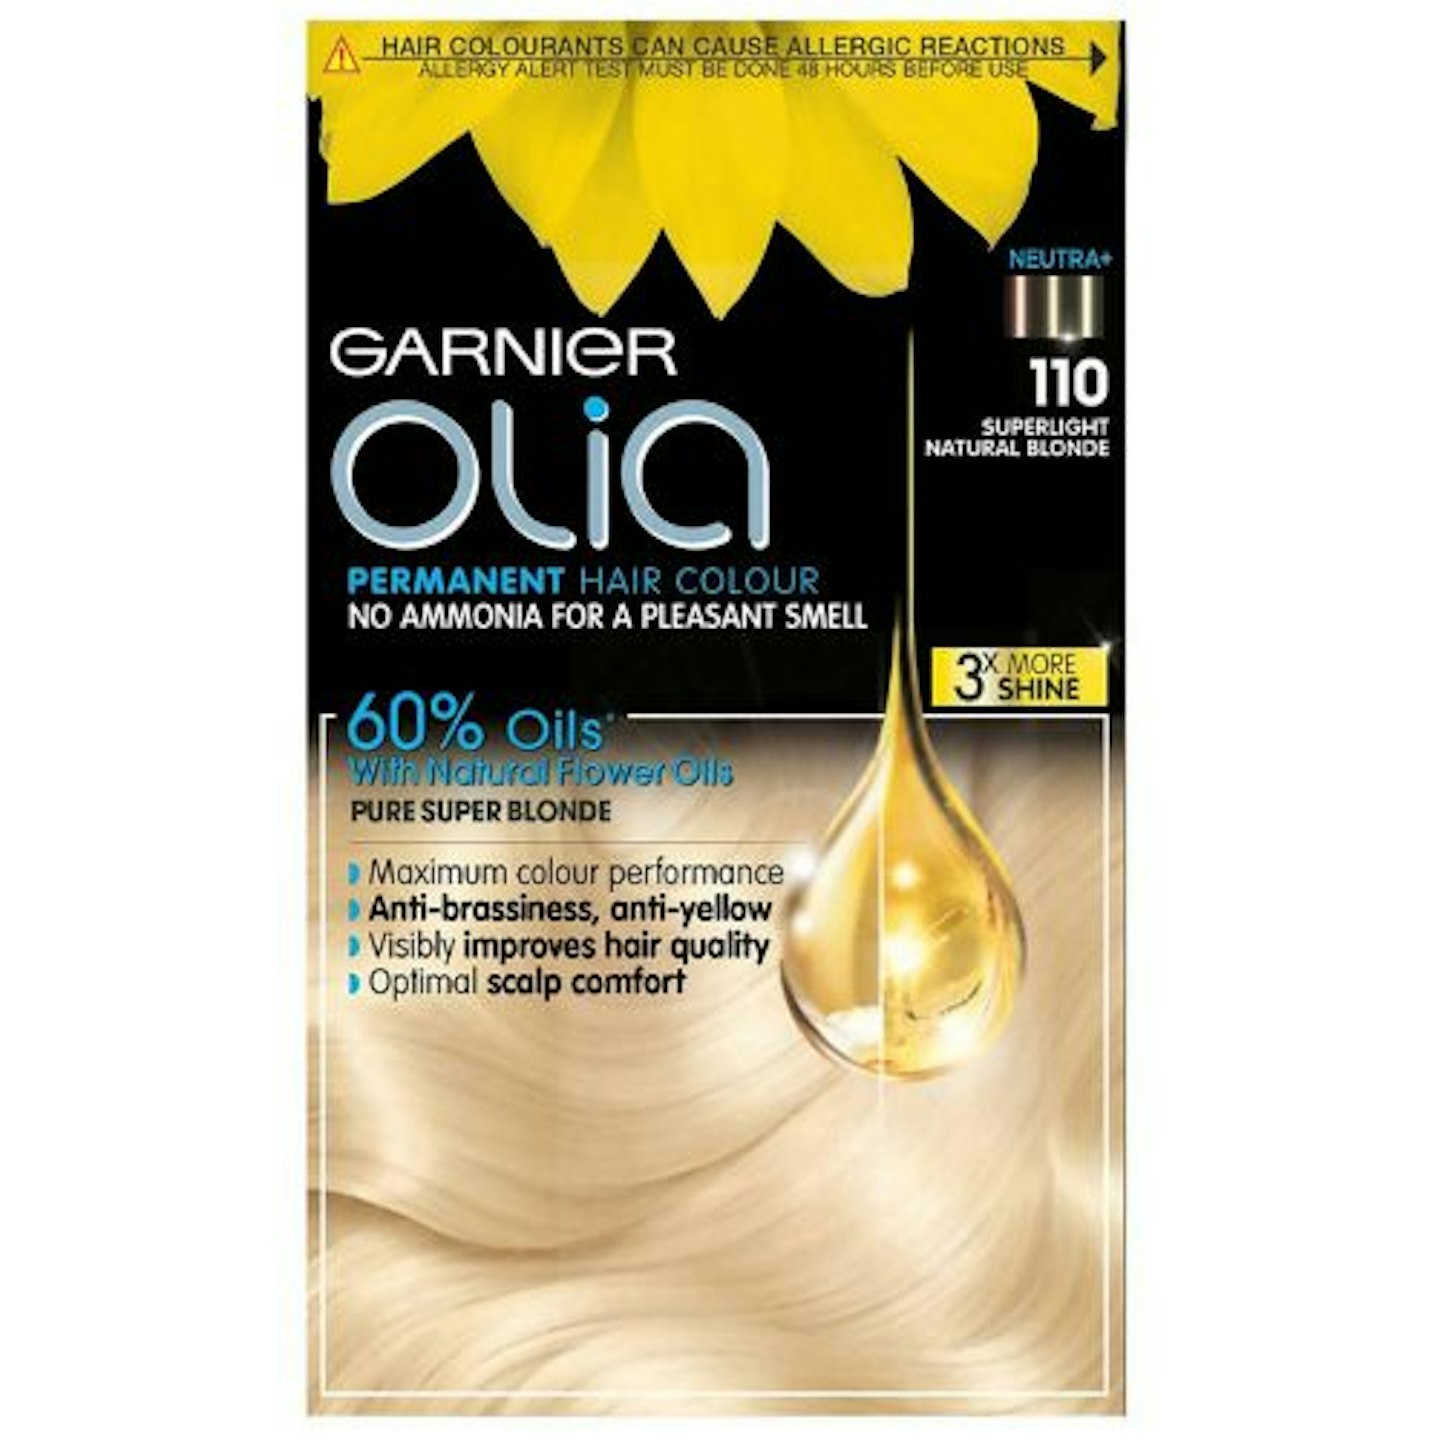 Garnier Olia Permanent Hair Dye 110 Super Light Blonde